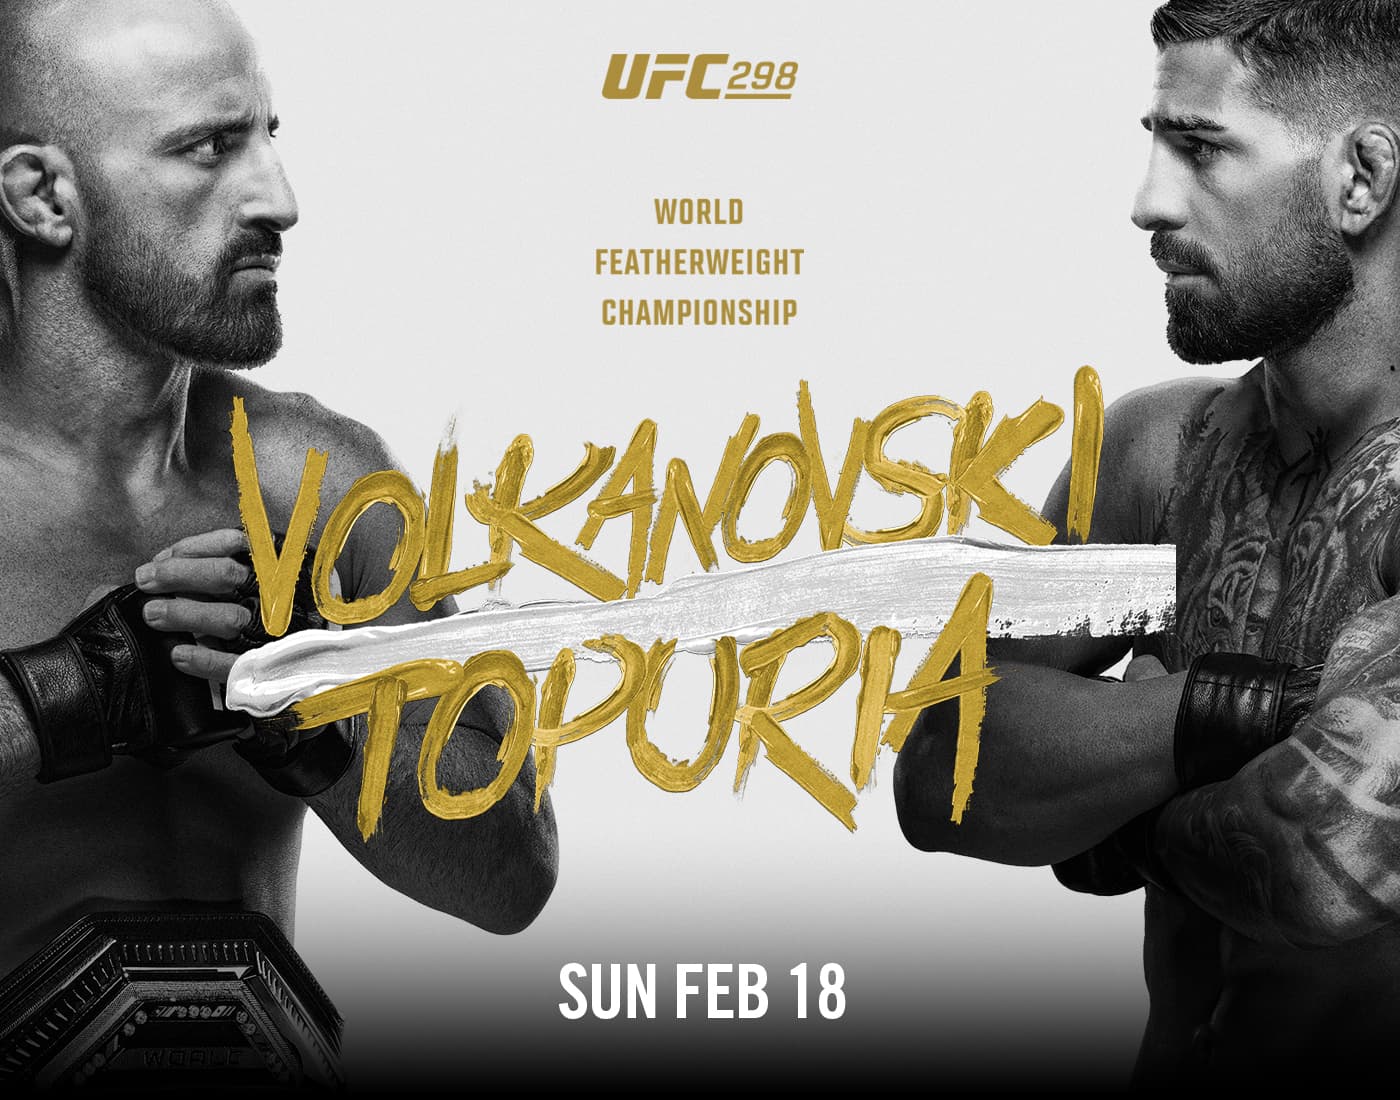 ألكسندر فولكانوفسكي ضد إيليا توبوريا على اللقب | بث UFC 298